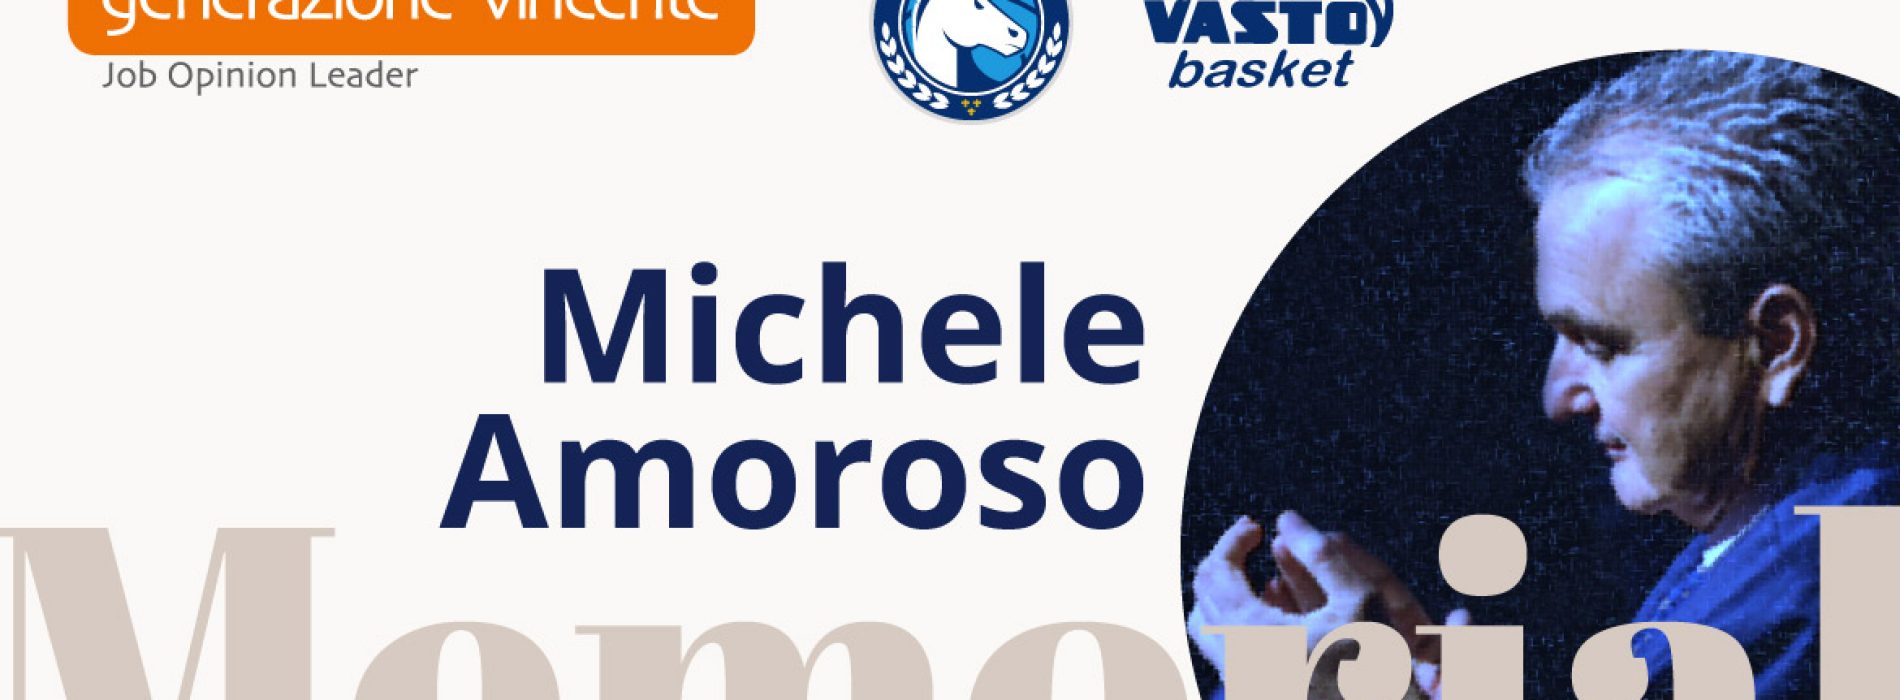 La famiglia del basket targato Gevi rende omaggio al Presidente Michele Amoroso